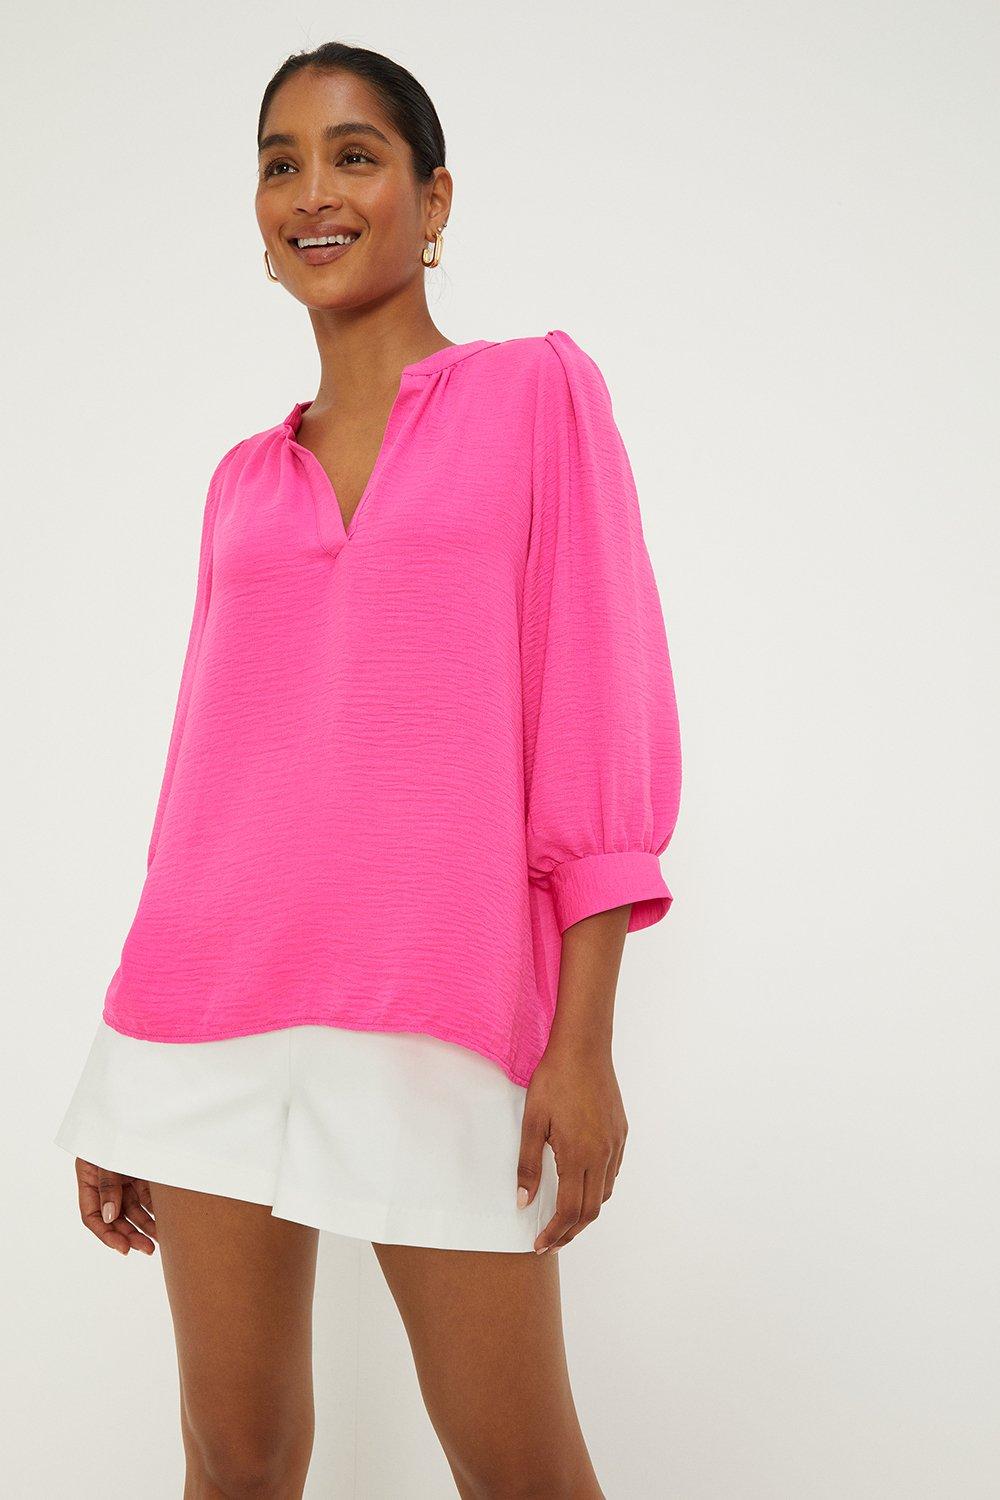 Women's Overhead Shirt - hot pink - 10